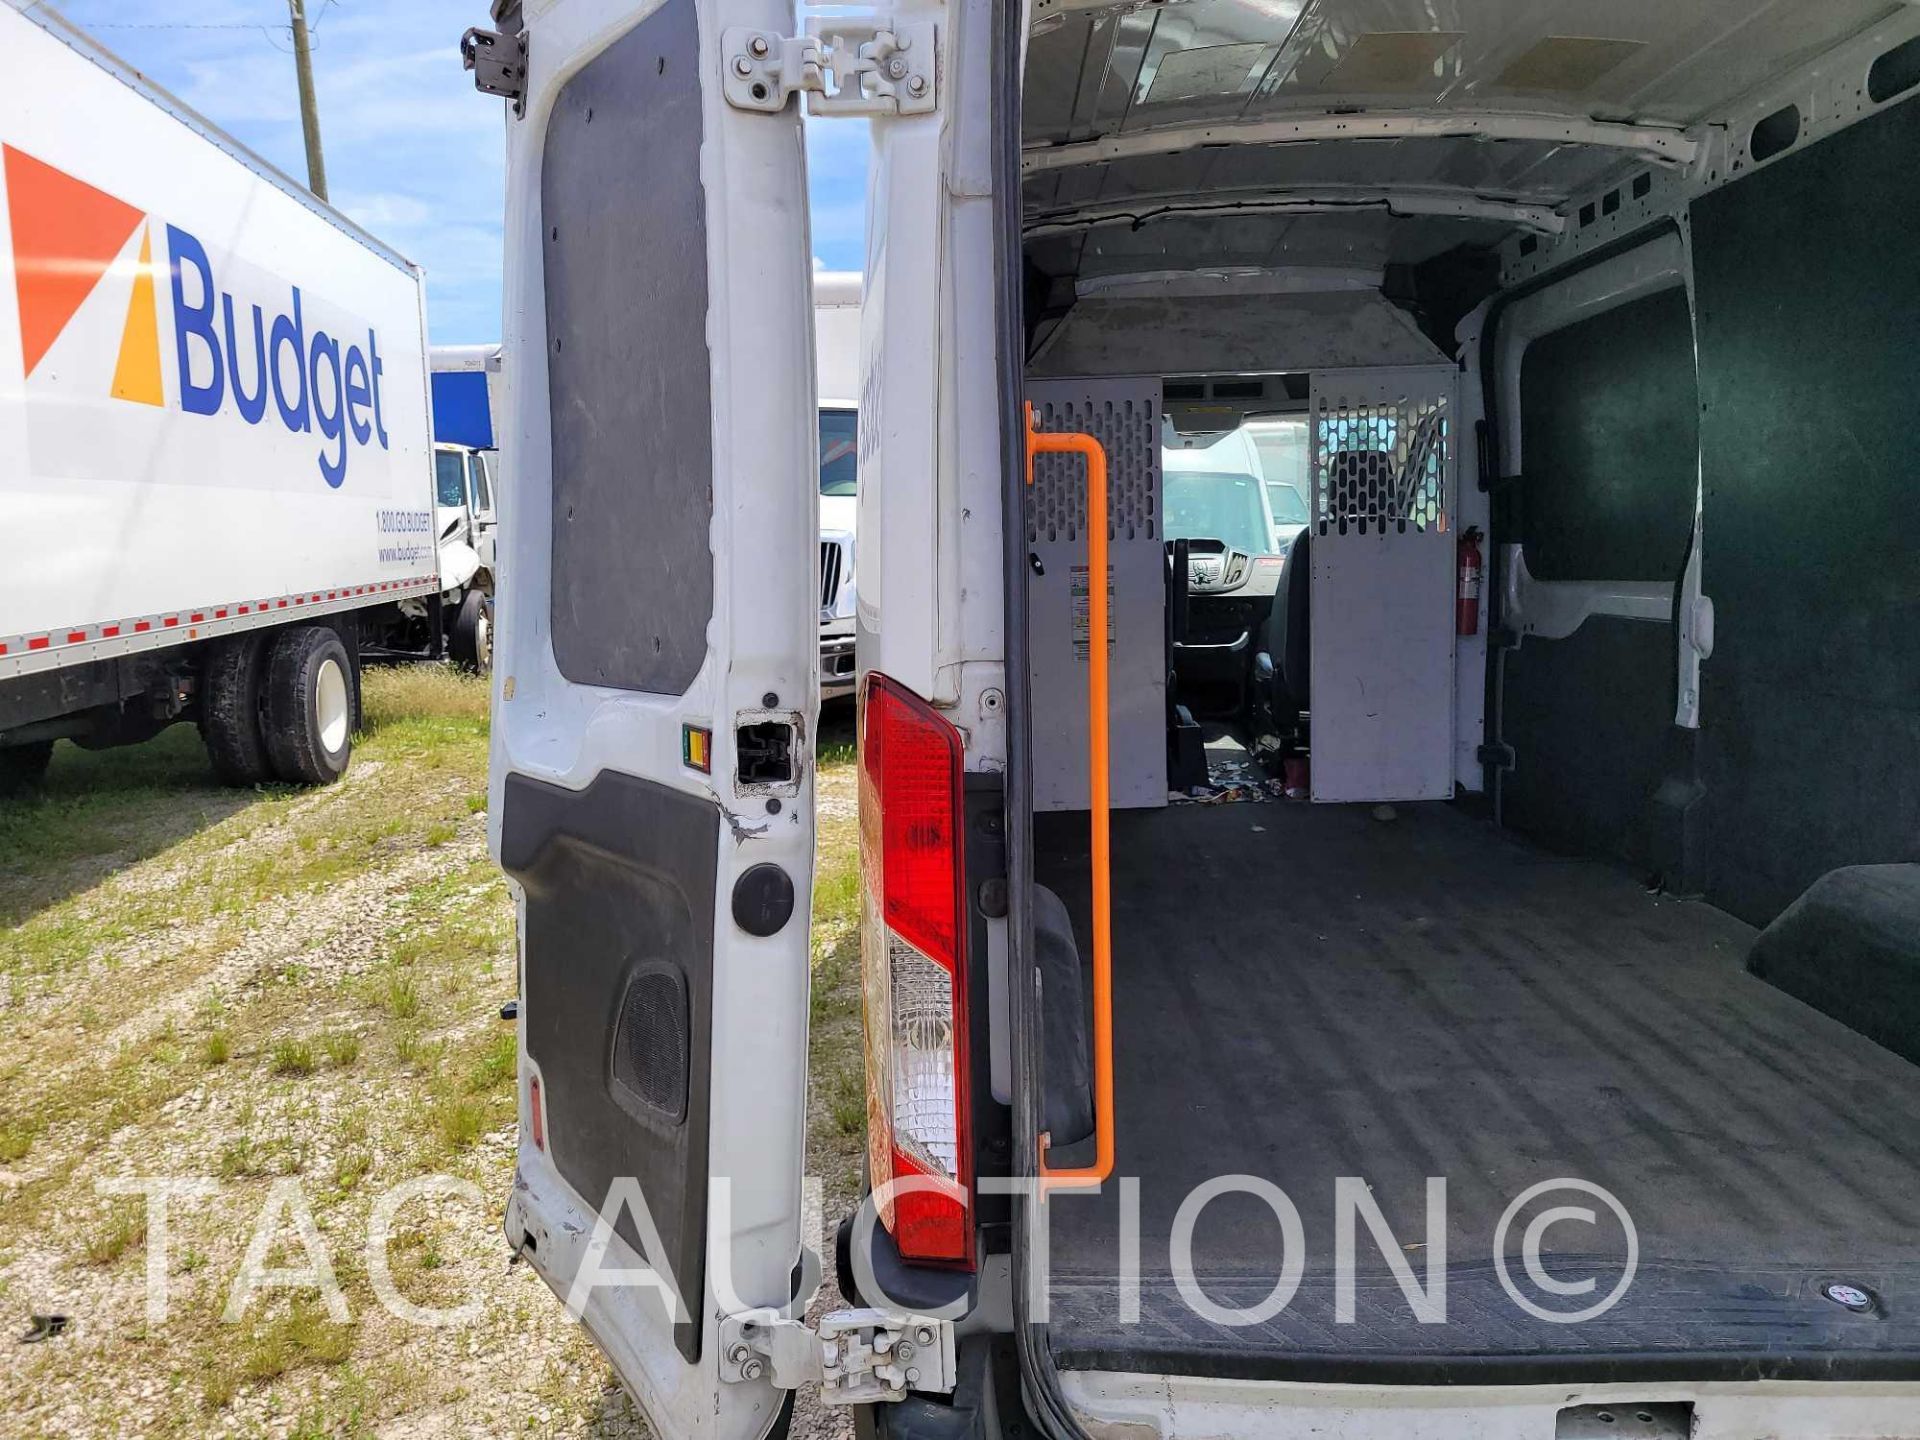 2019 Ford Transit 150 Cargo Van - Image 27 of 49